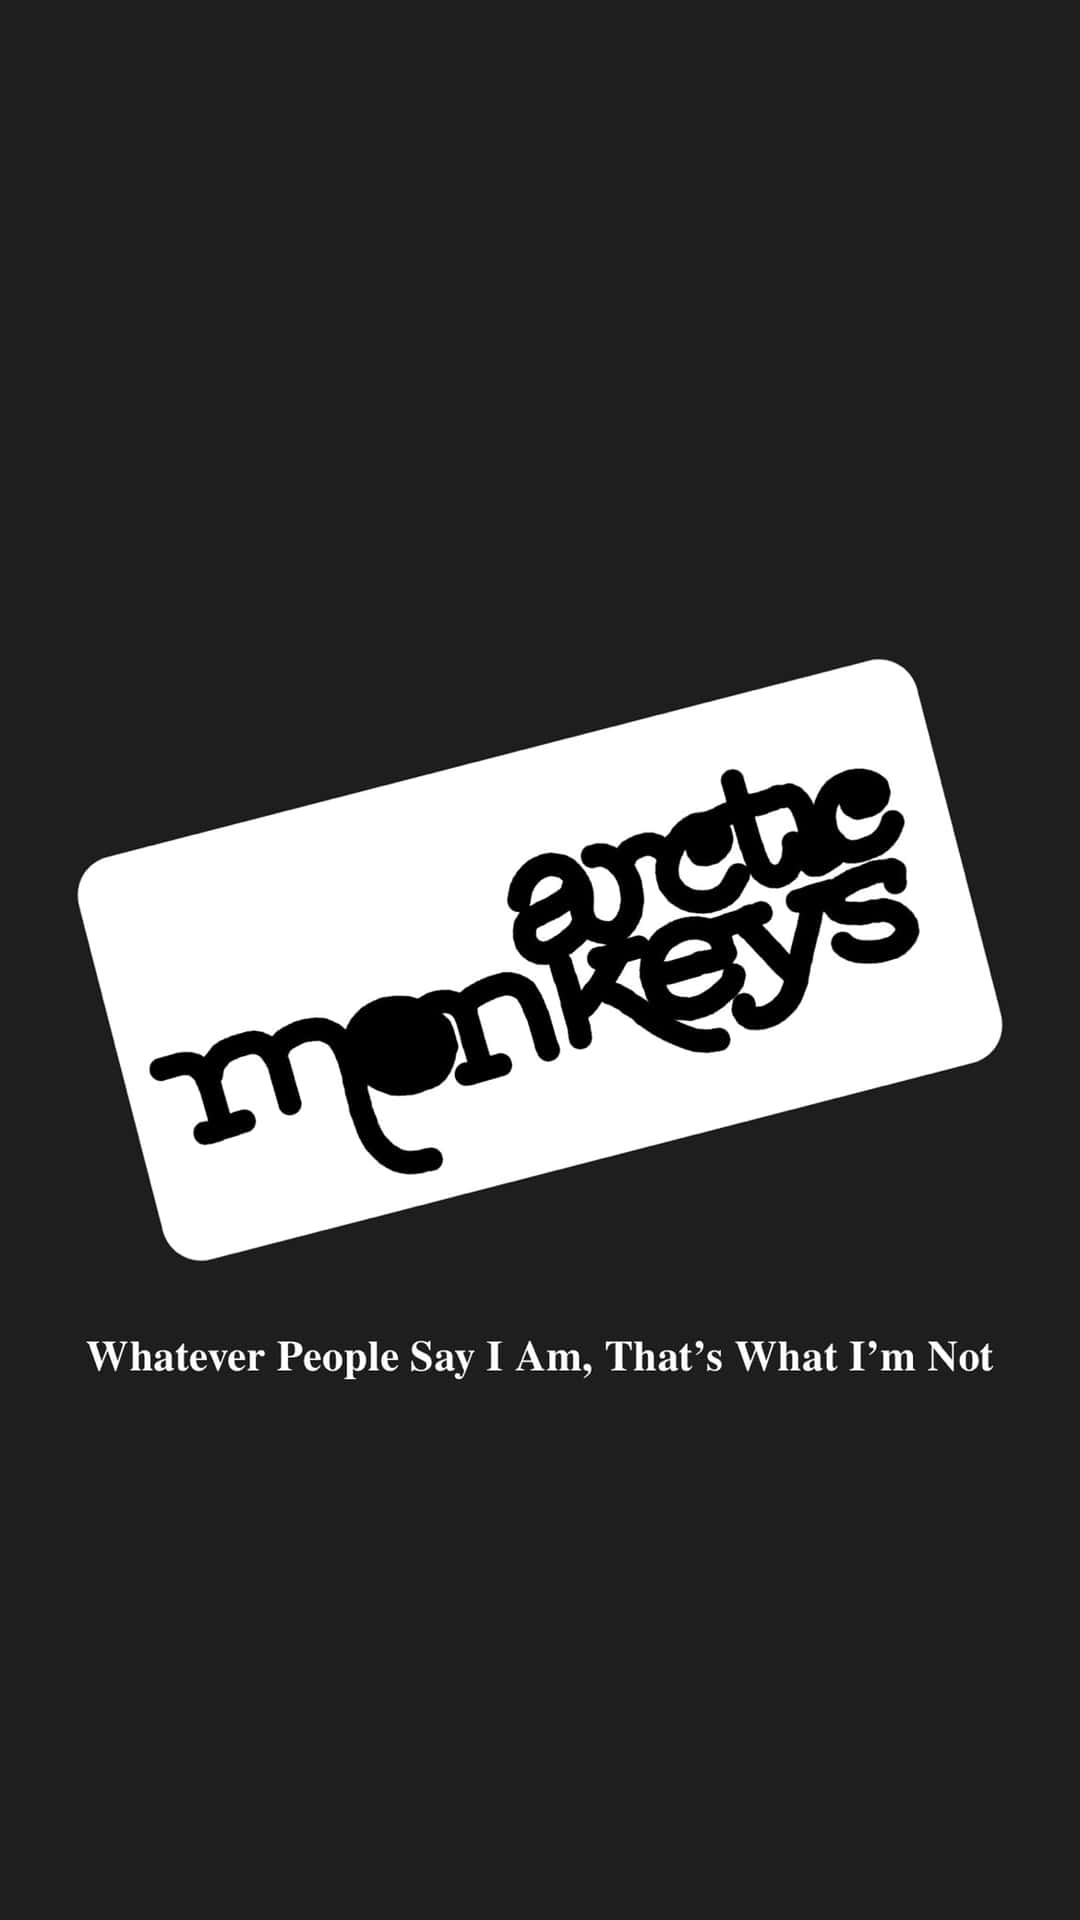 Arctic Monkeys Album Cover